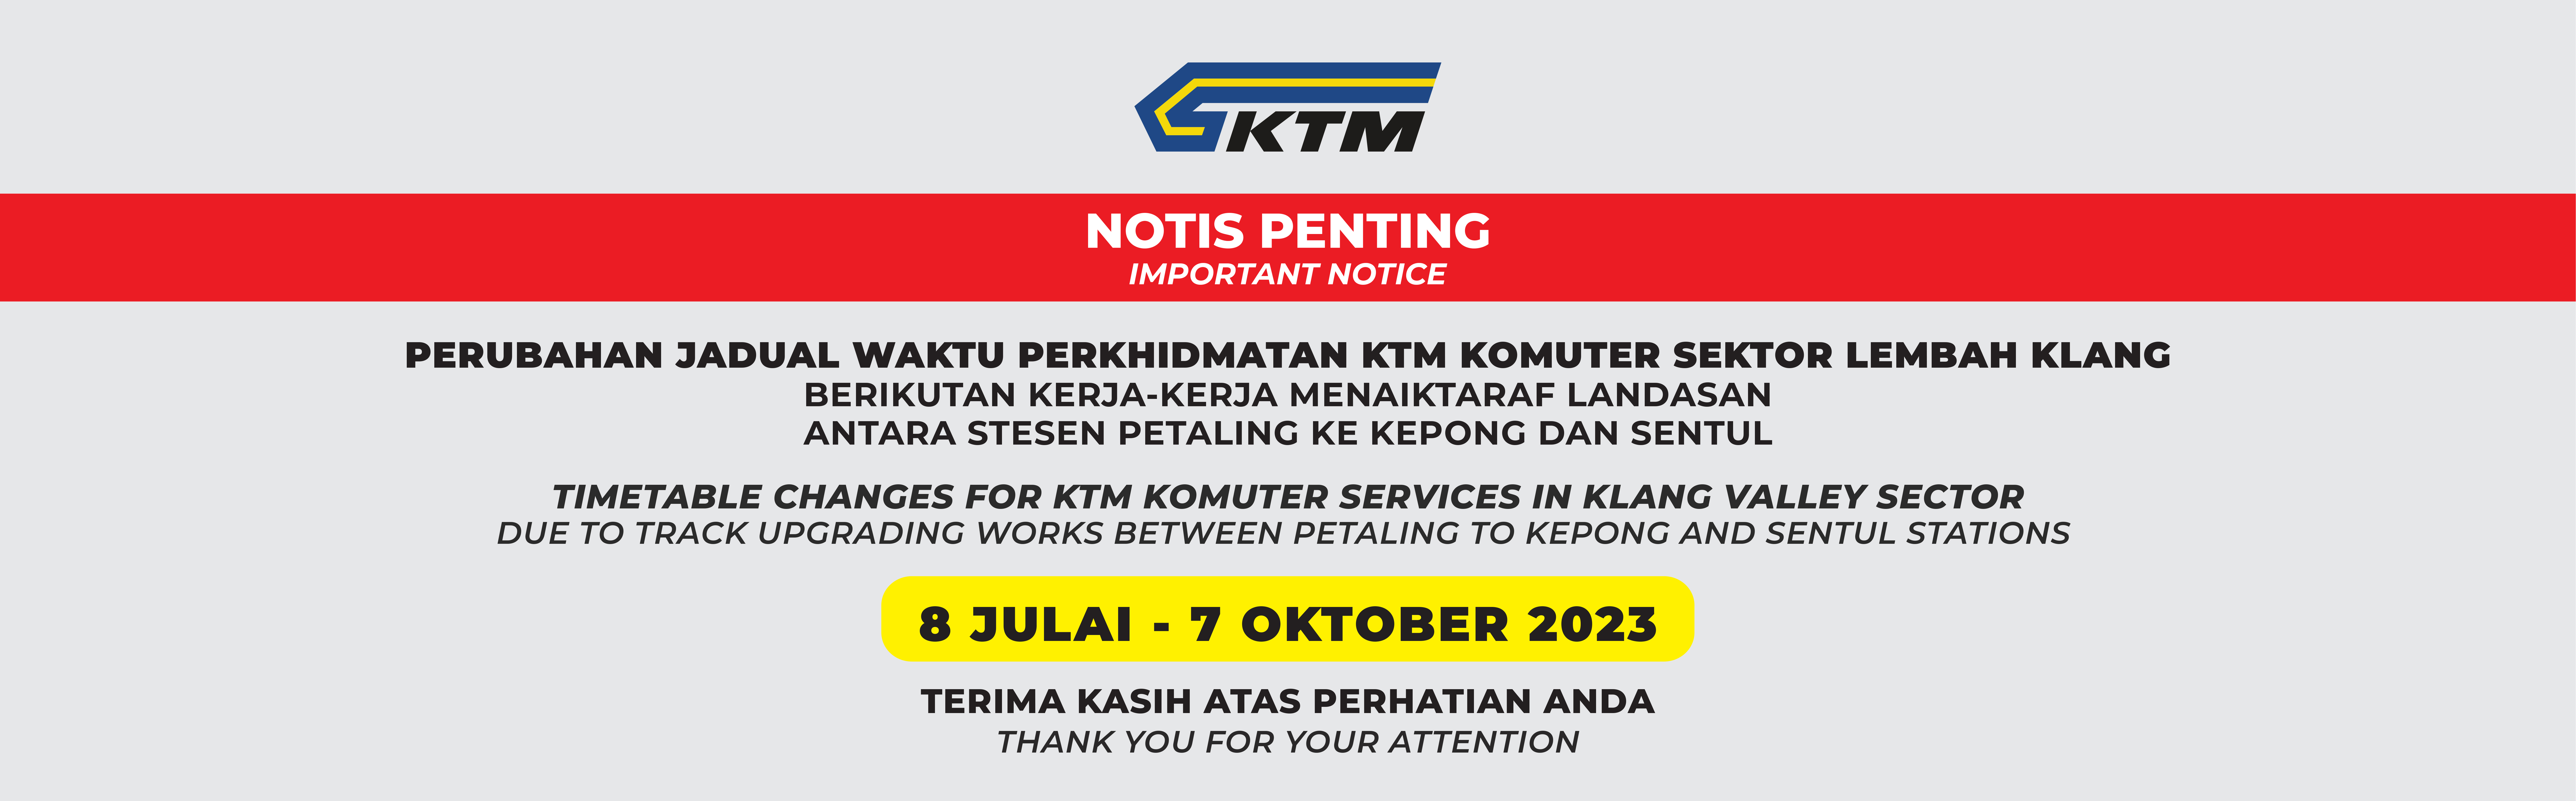 Perubahan Jadual Waktu Perkhidmatan KTM Komuter Lembah Klang (8 Julai - 7 Oktober 2023)